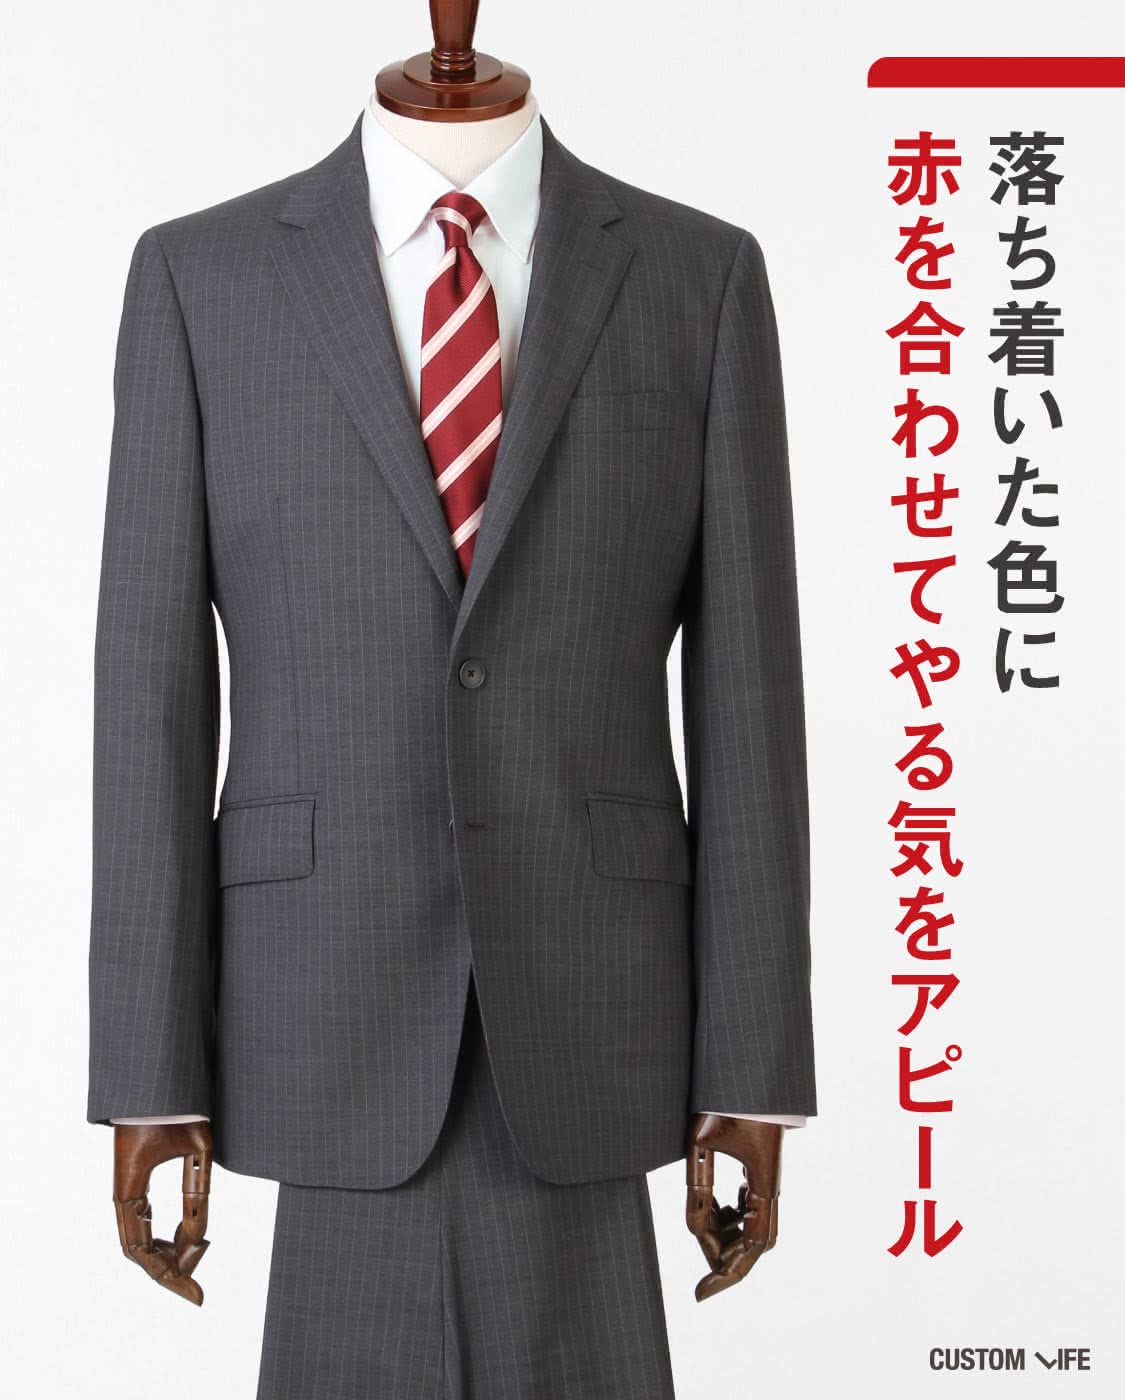 スーツとネクタイの組み合わせ｜シーン別おすすめ好印象コーデ14選 - CUSTOMLIFE(カスタムライフ)